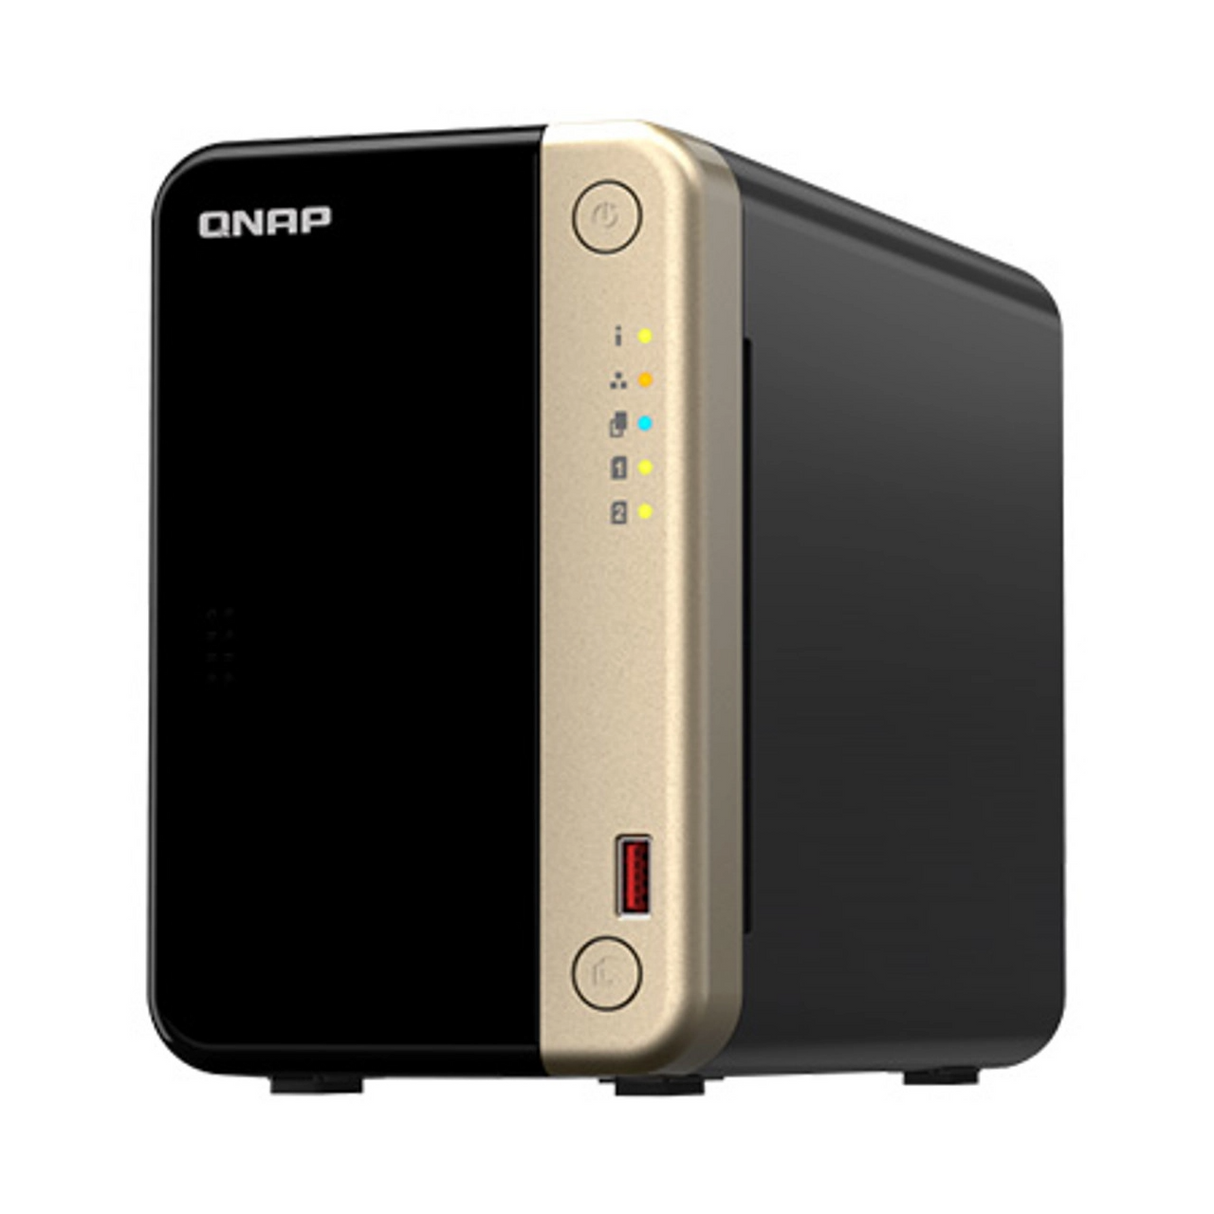 QNAP NAS strežnik za 2 diskA, 8GB ram, 2,5GbE mreža